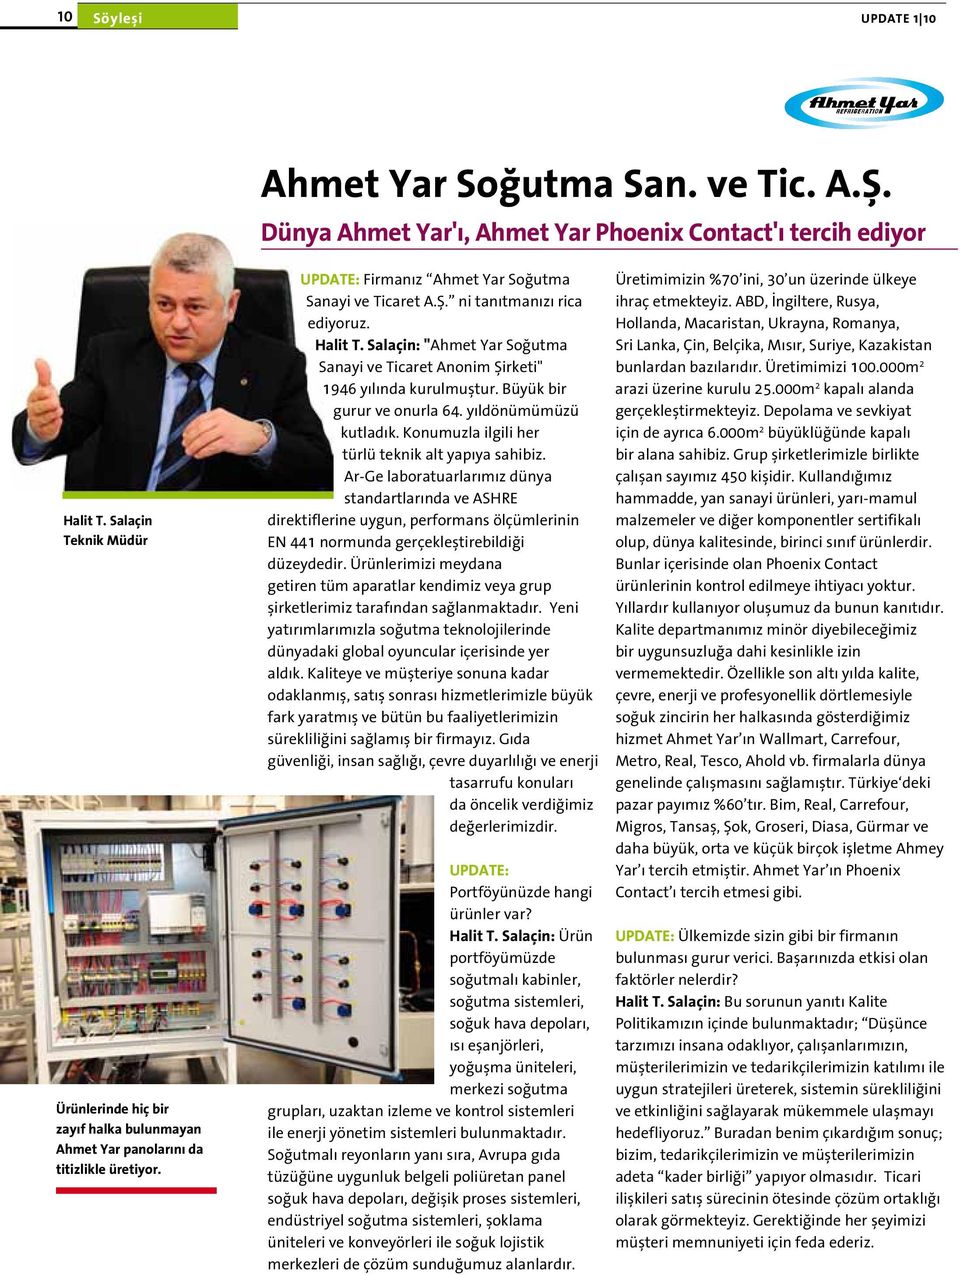 Halit T. Salaçin: "Ahmet Yar Soğutma Sanayi ve Ticaret Anonim Şirketi" 1946 yılında kurulmuştur. Büyük bir gurur ve onurla 64. yıldönümümüzü kutladık.